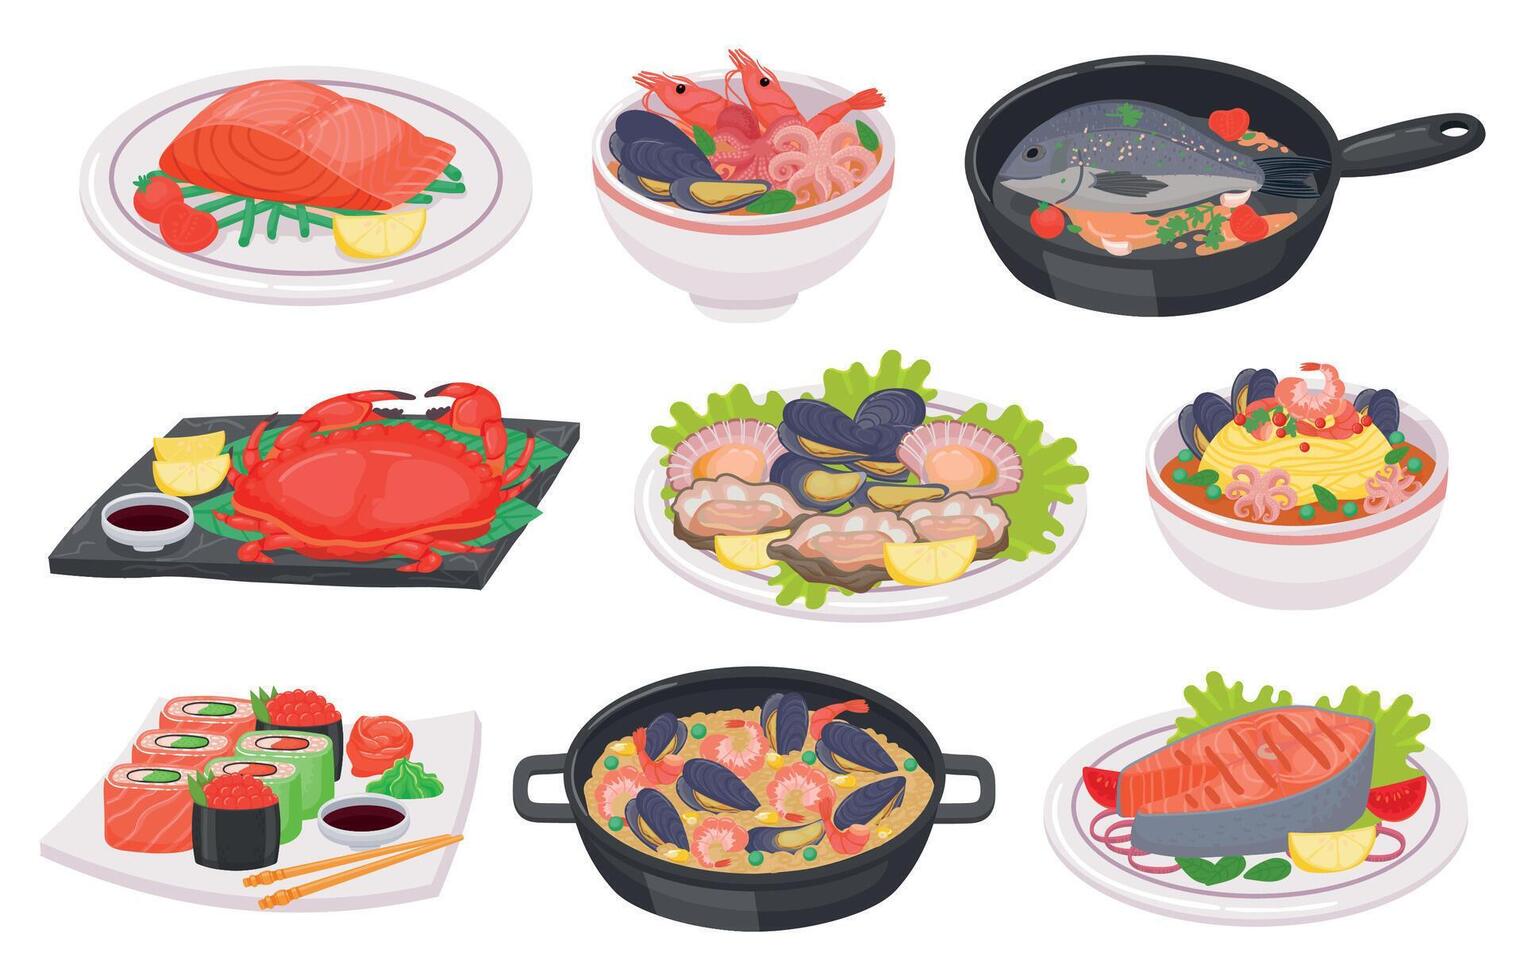 Karikatur Meeresfrüchte Geschirr mit Fisch, Krake, Garnelen und Lachs Steak. Sushi, Krabbe, Salat, Suppe und Nudeln mit Meer Essen auf Platte, Vektor einstellen